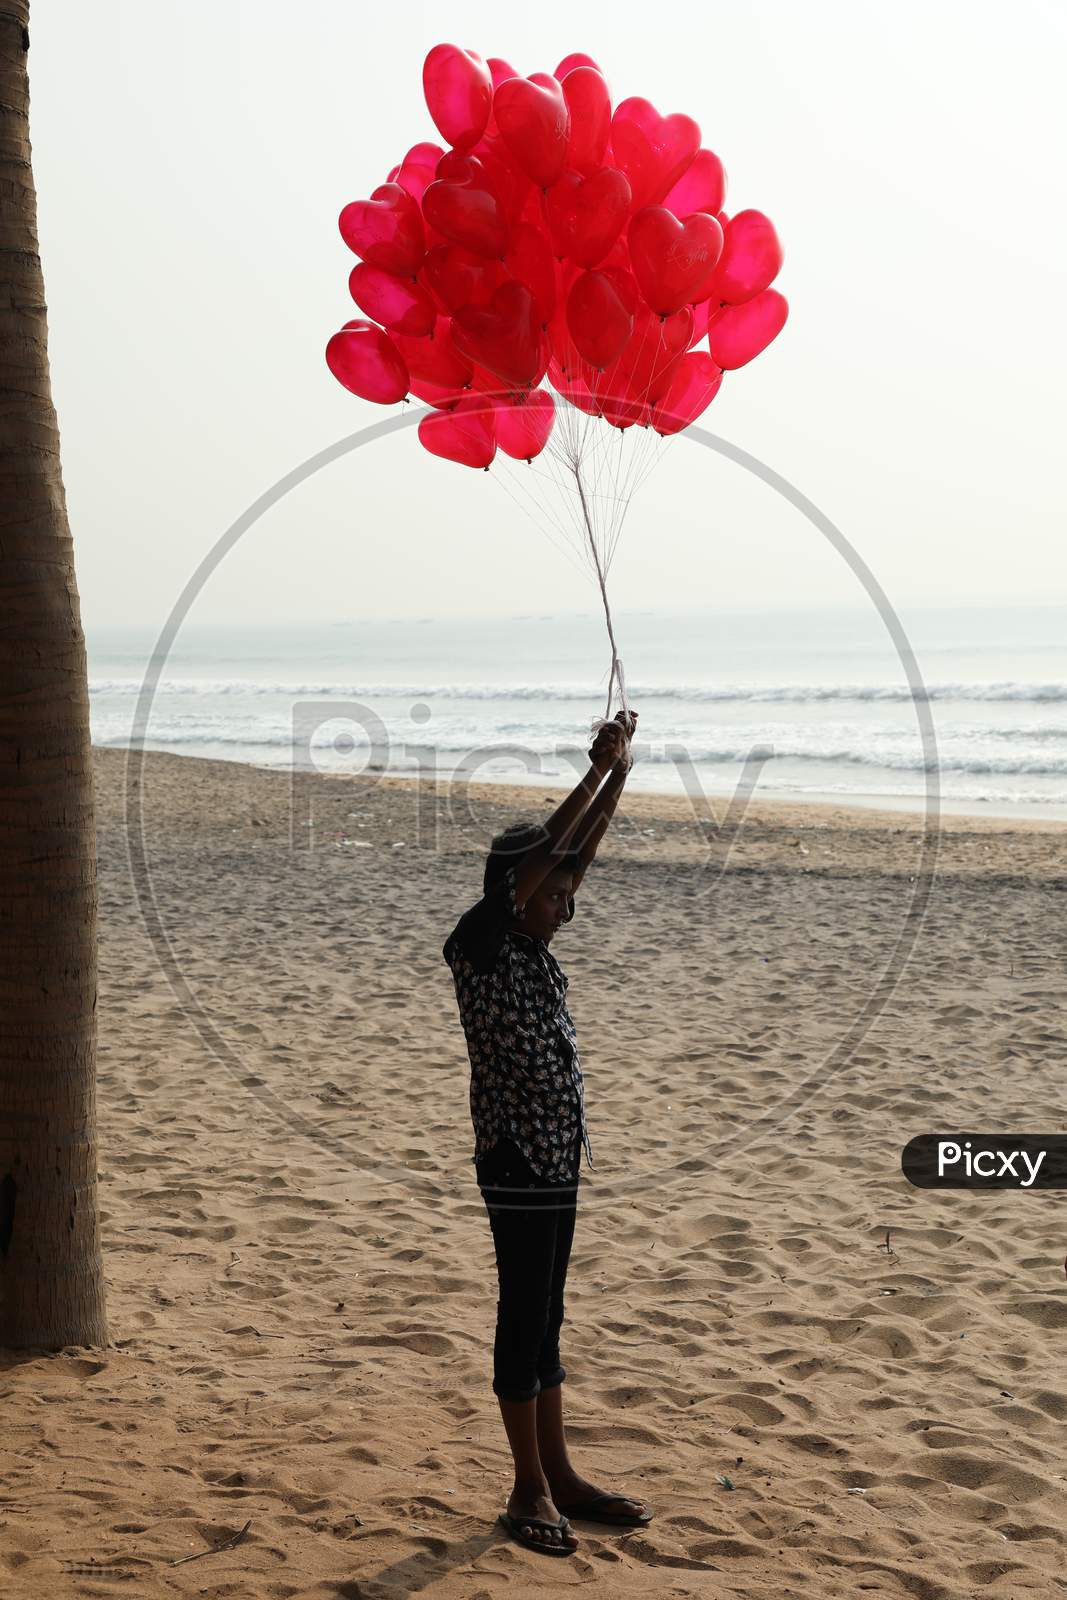 Air Balloon Seller in a Beach